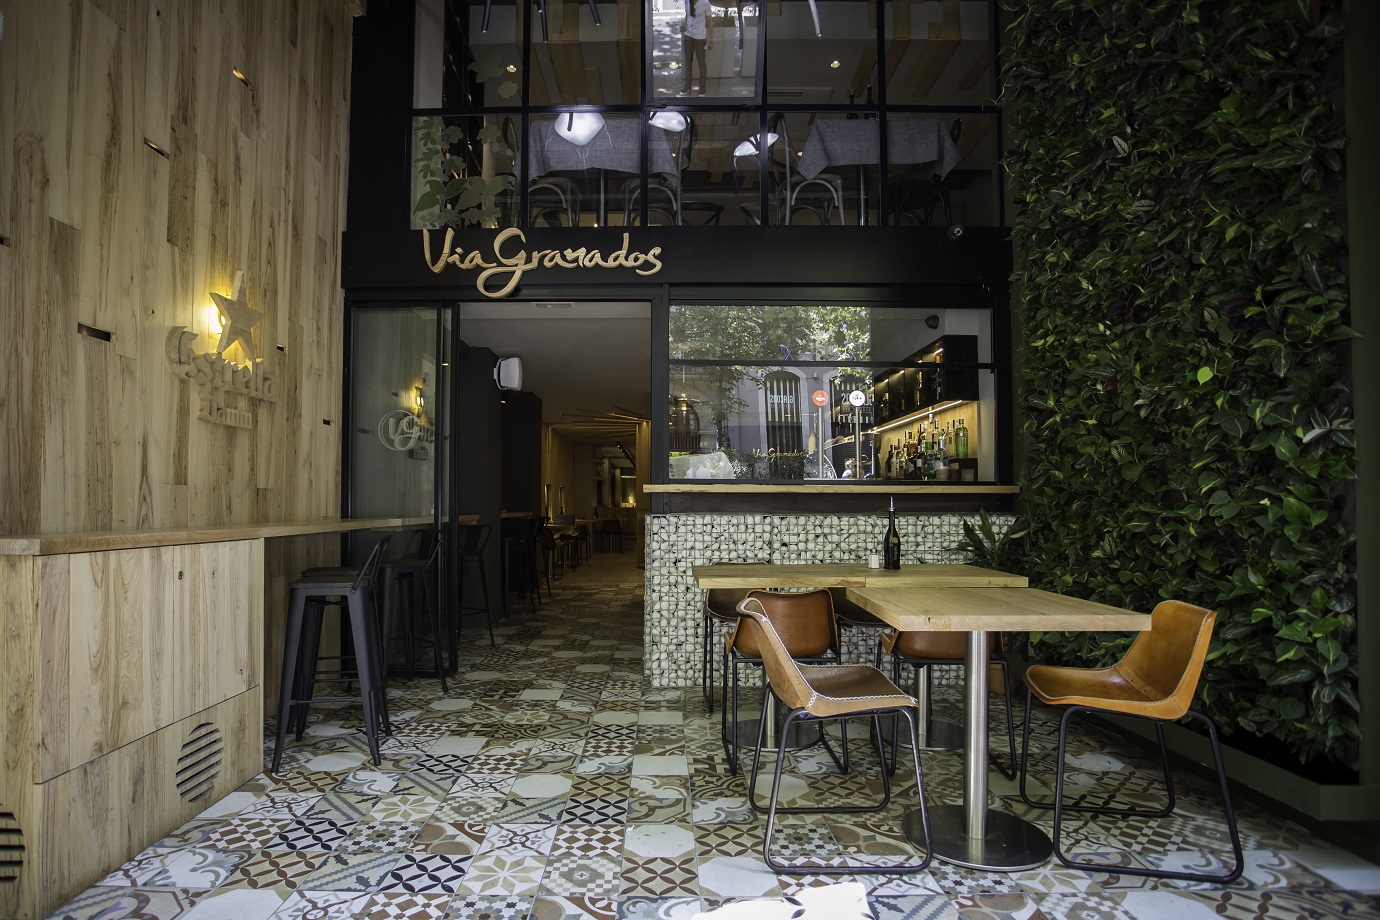 Restaurant Via Granados: un projecte d'interiorisme integral amb cinc sentits